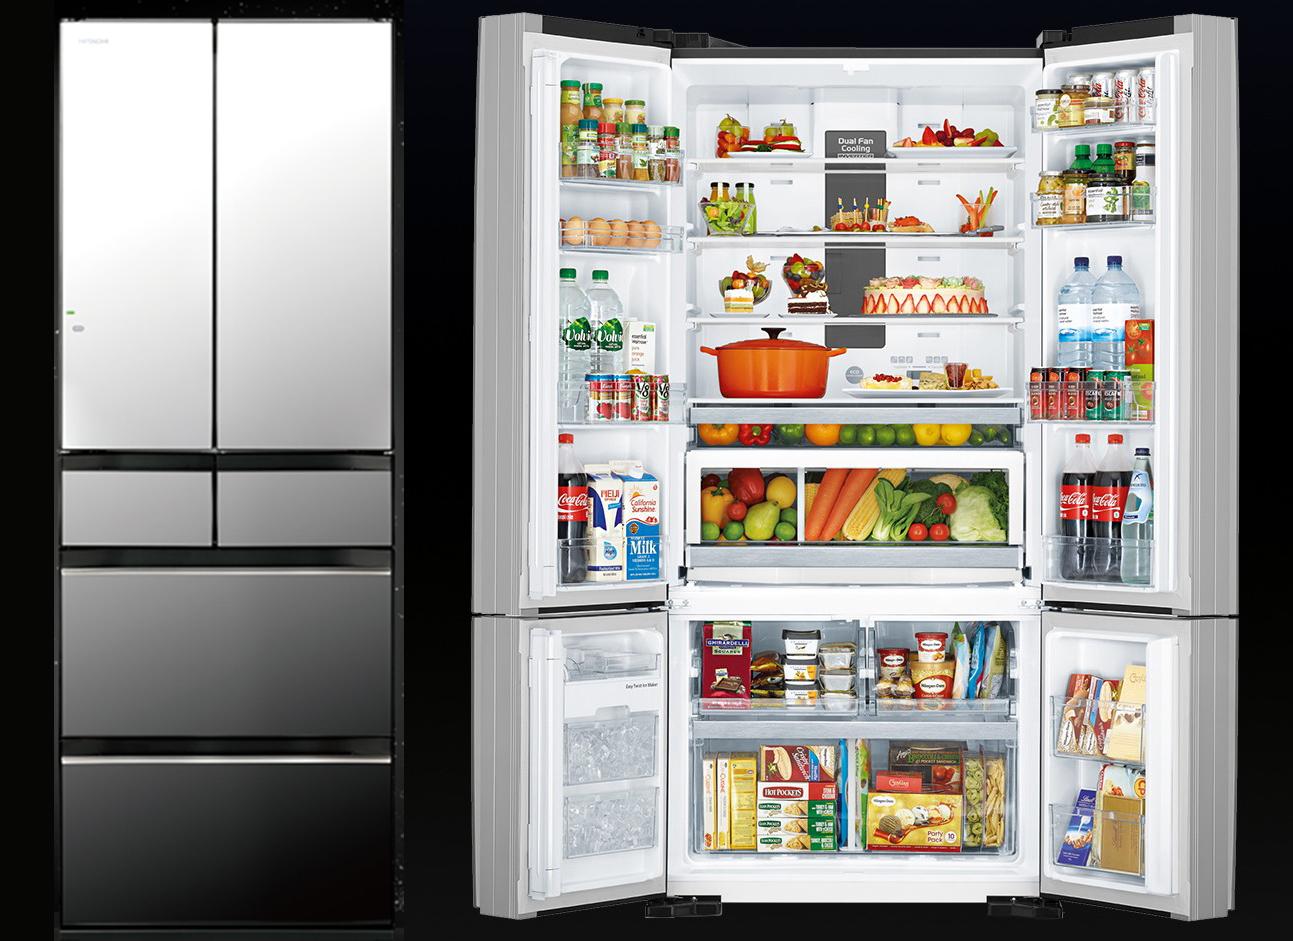 日立冰箱怎么样,日立冰箱和松下冰箱,博世冰箱比哪个好?